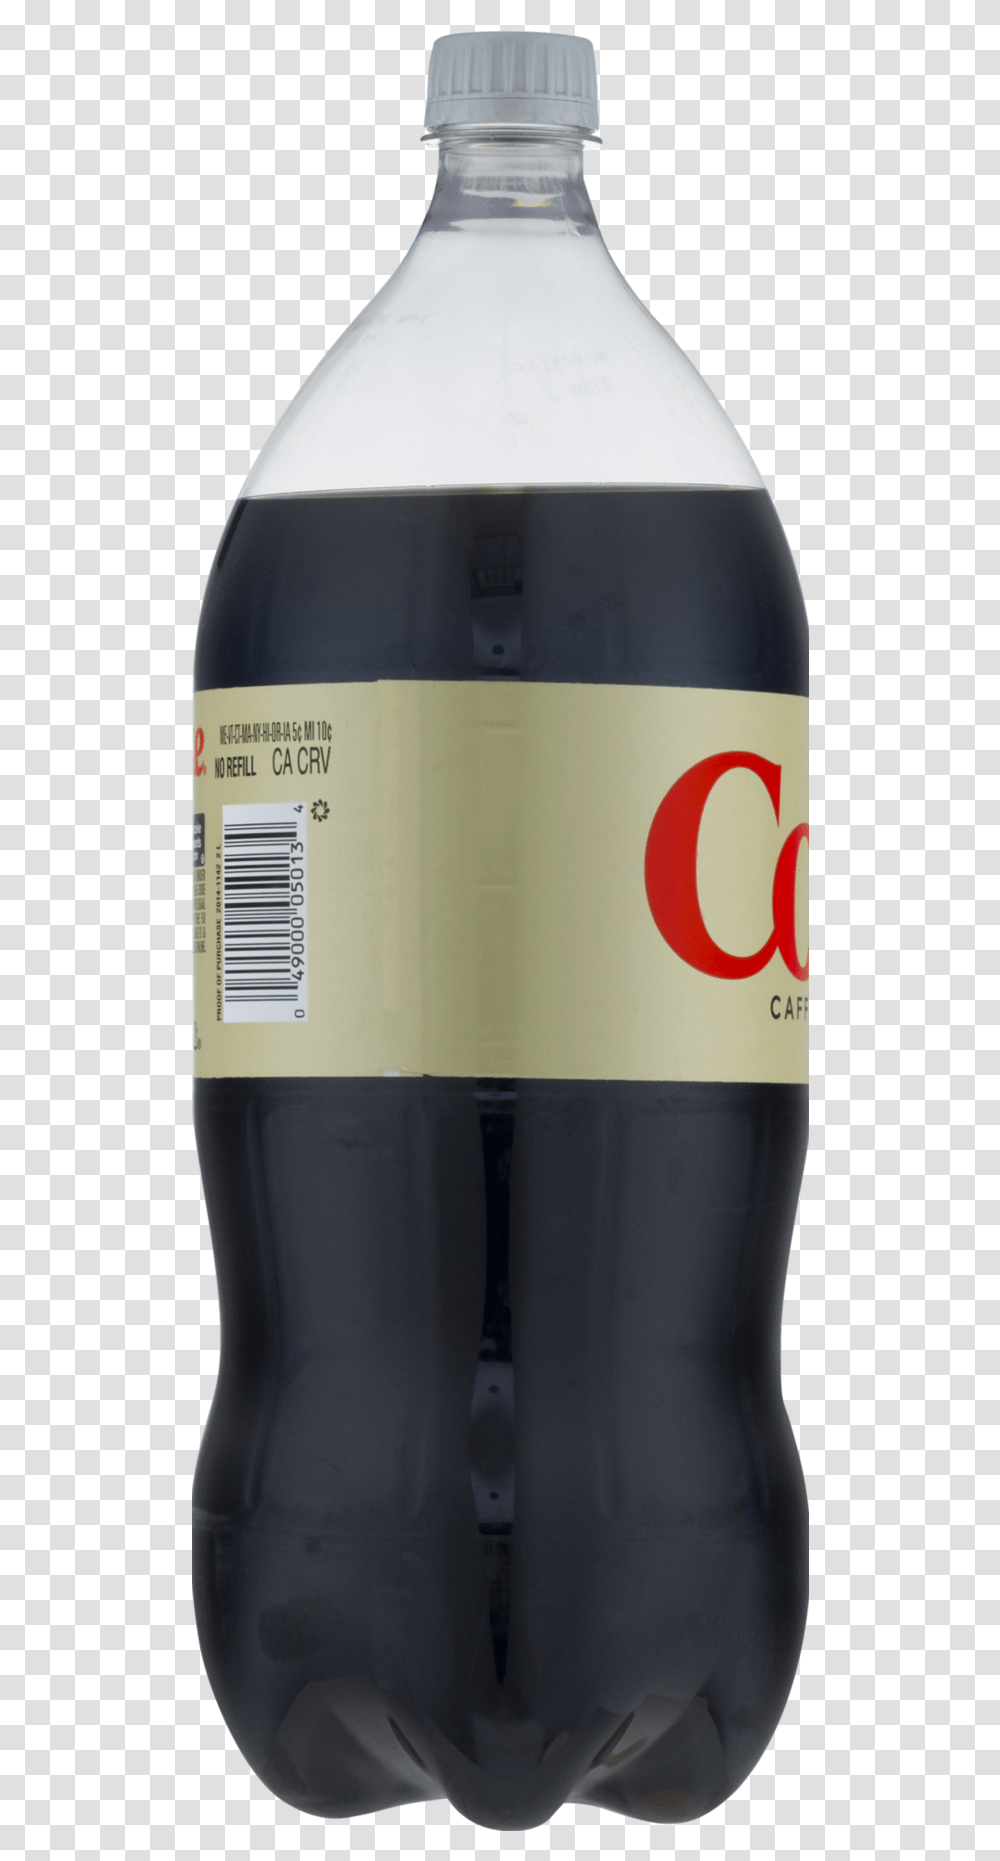 Caffeine Free Soda L Two Liter Bottle, Barrel, Label, Beverage, Cosmetics Transparent Png